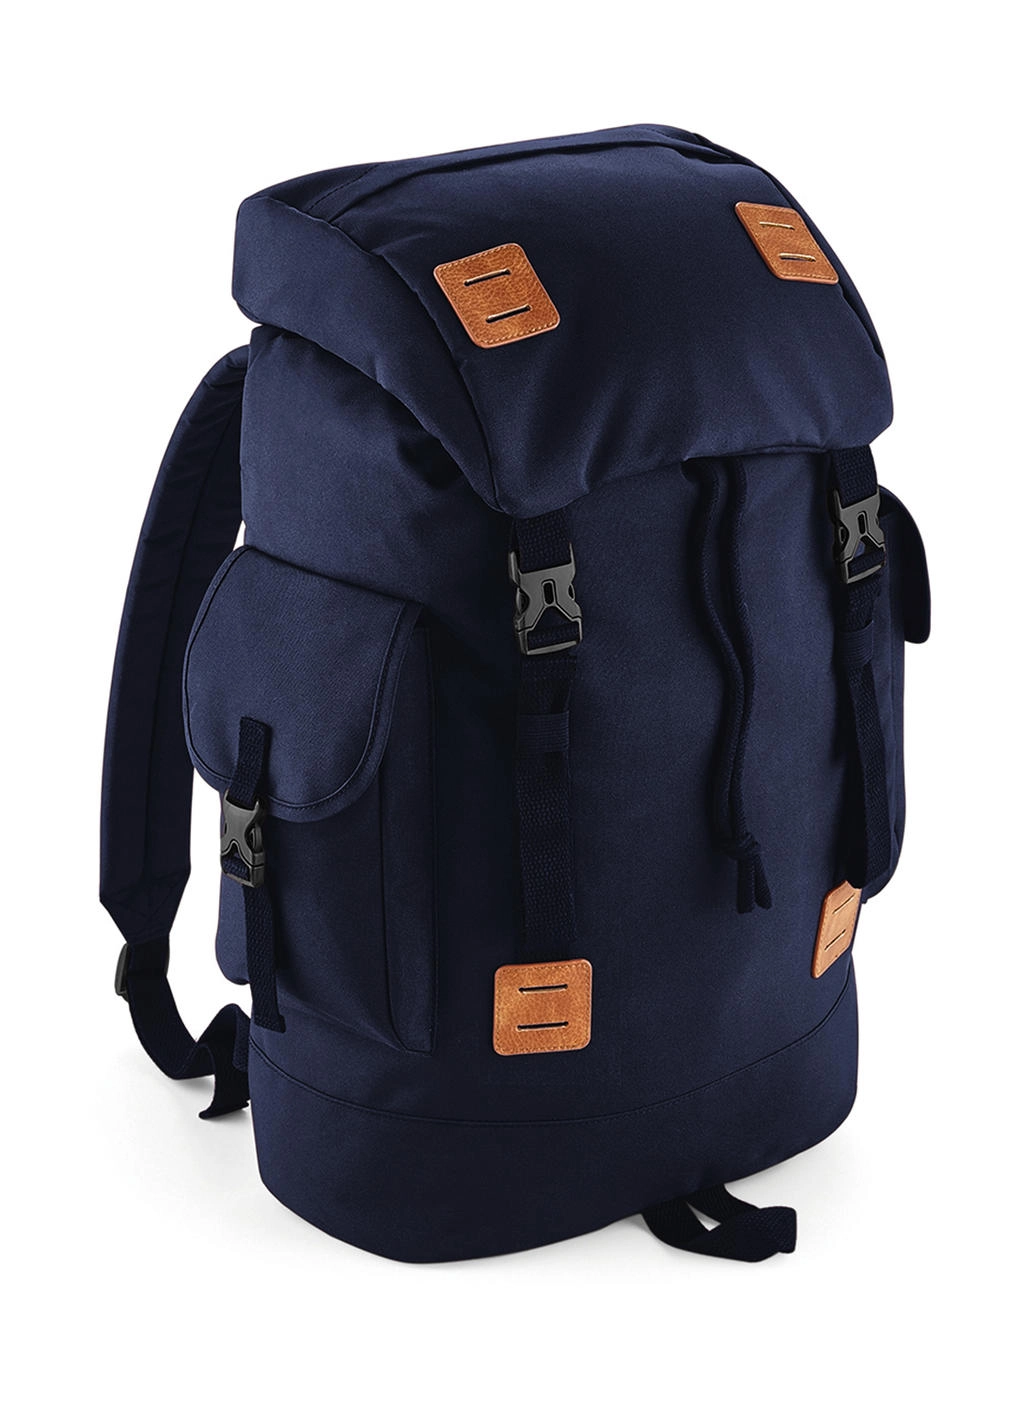 Urban Explorer Backpack zum Besticken und Bedrucken in der Farbe Navy Dusk/Tan mit Ihren Logo, Schriftzug oder Motiv.